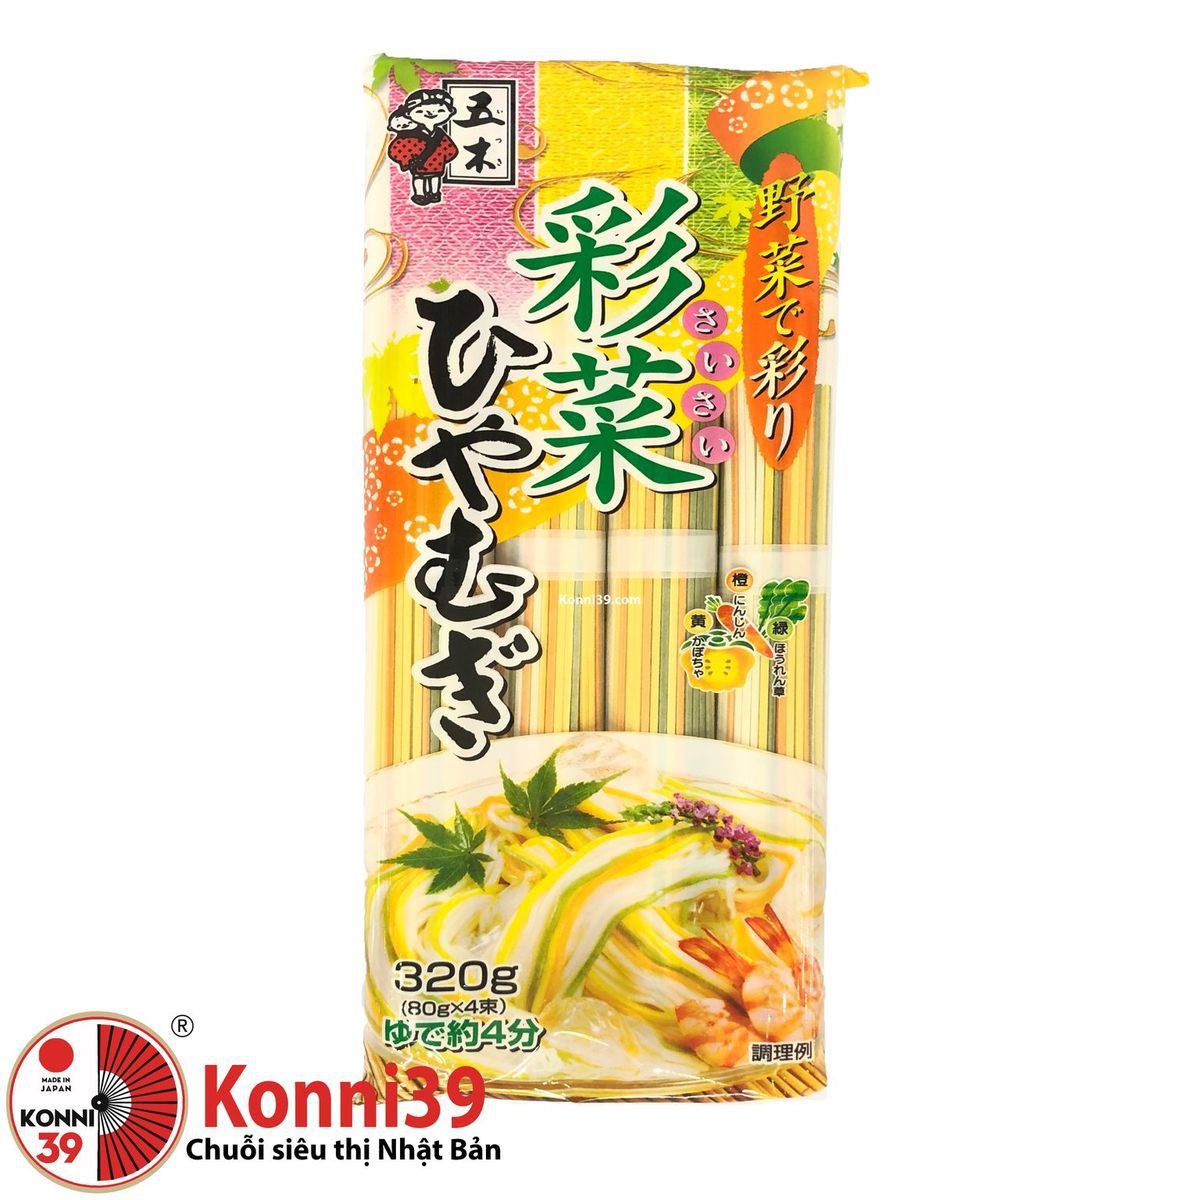 Mỳ somen sắc màu sợi to Itsuki (Itsuki Saisai Hiyamugi Somen Noodle), size  320g - Chuỗi siêu thị Nhật Bản nội địa - Made in Japan Konni39 tại Việt Nam